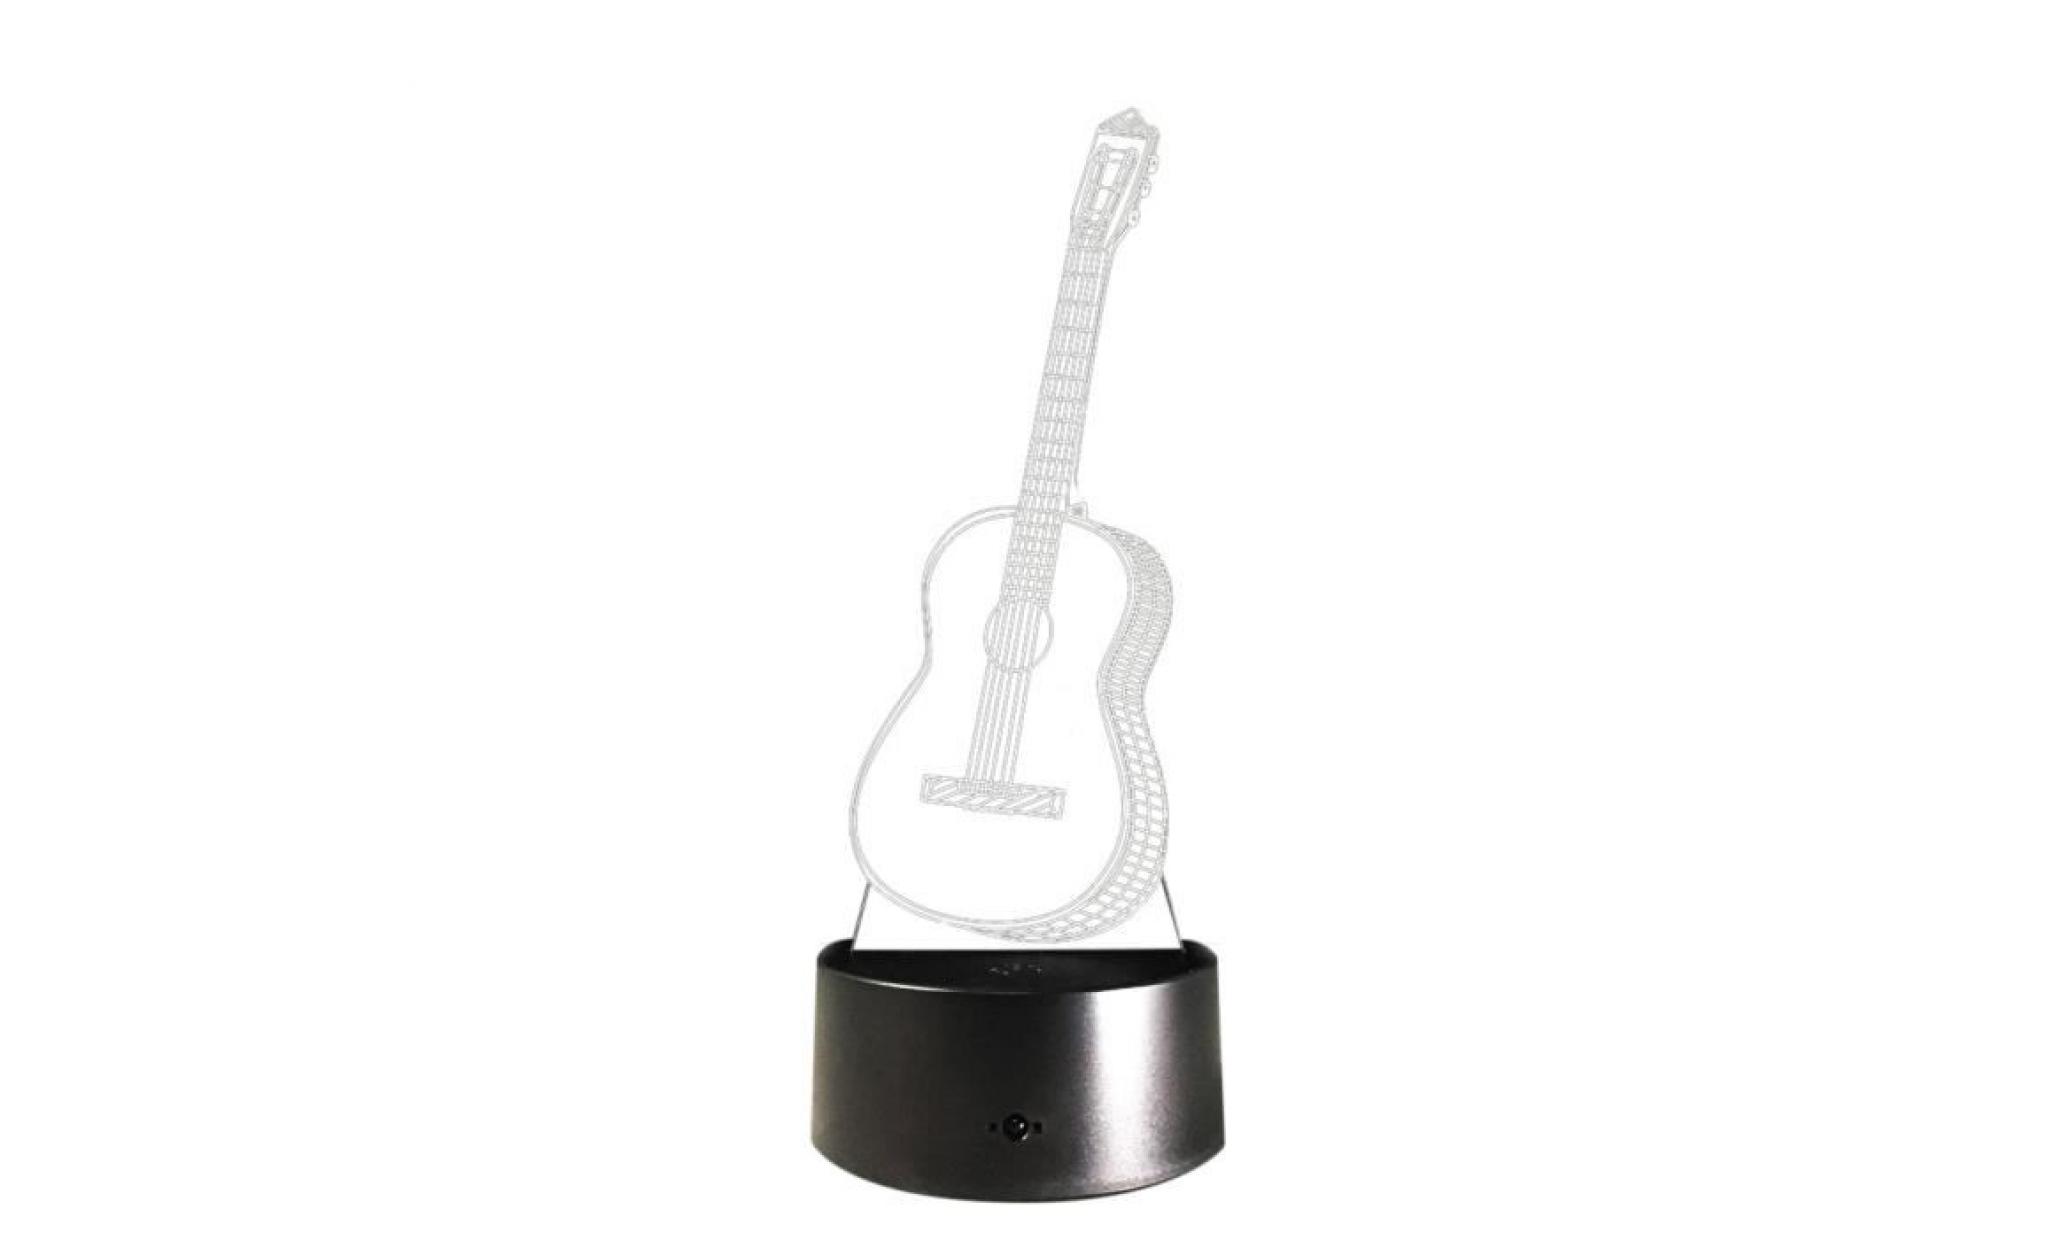 led guitar ukulele 3d night light 7 couleurs table lampe de bureau à touche cadeau de noël ond4668